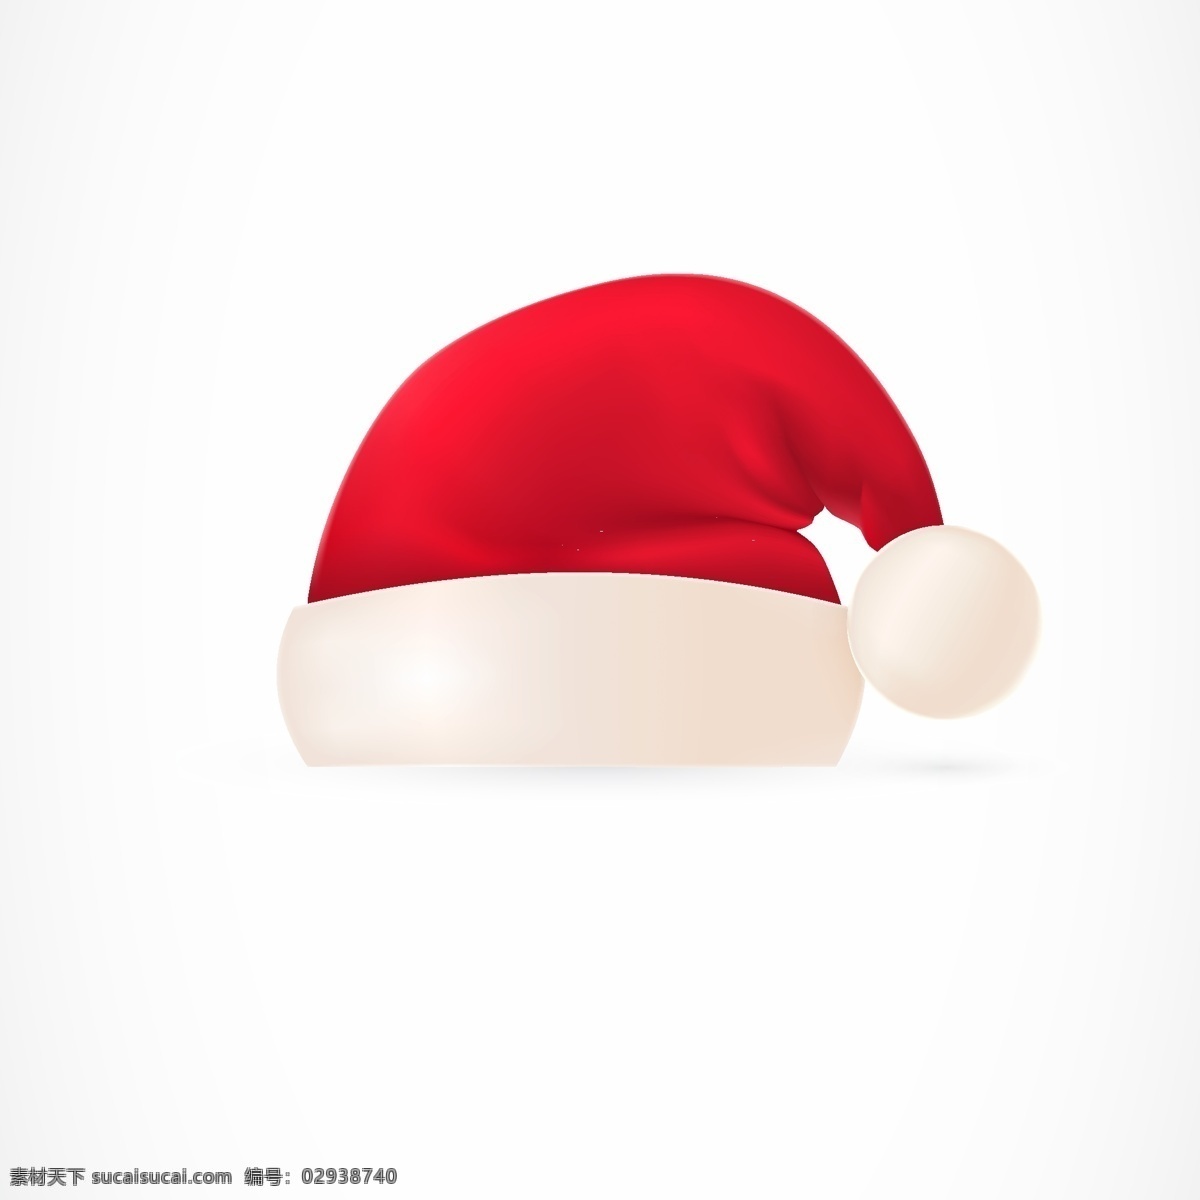 圣诞帽 圣诞帽素材 圣诞节 圣诞老人 圣诞帽贴图 圣诞节日 节日素材 圣诞素材 圣诞节素材 卡通圣诞帽 红色帽子 红帽子 帽子 矢量插画